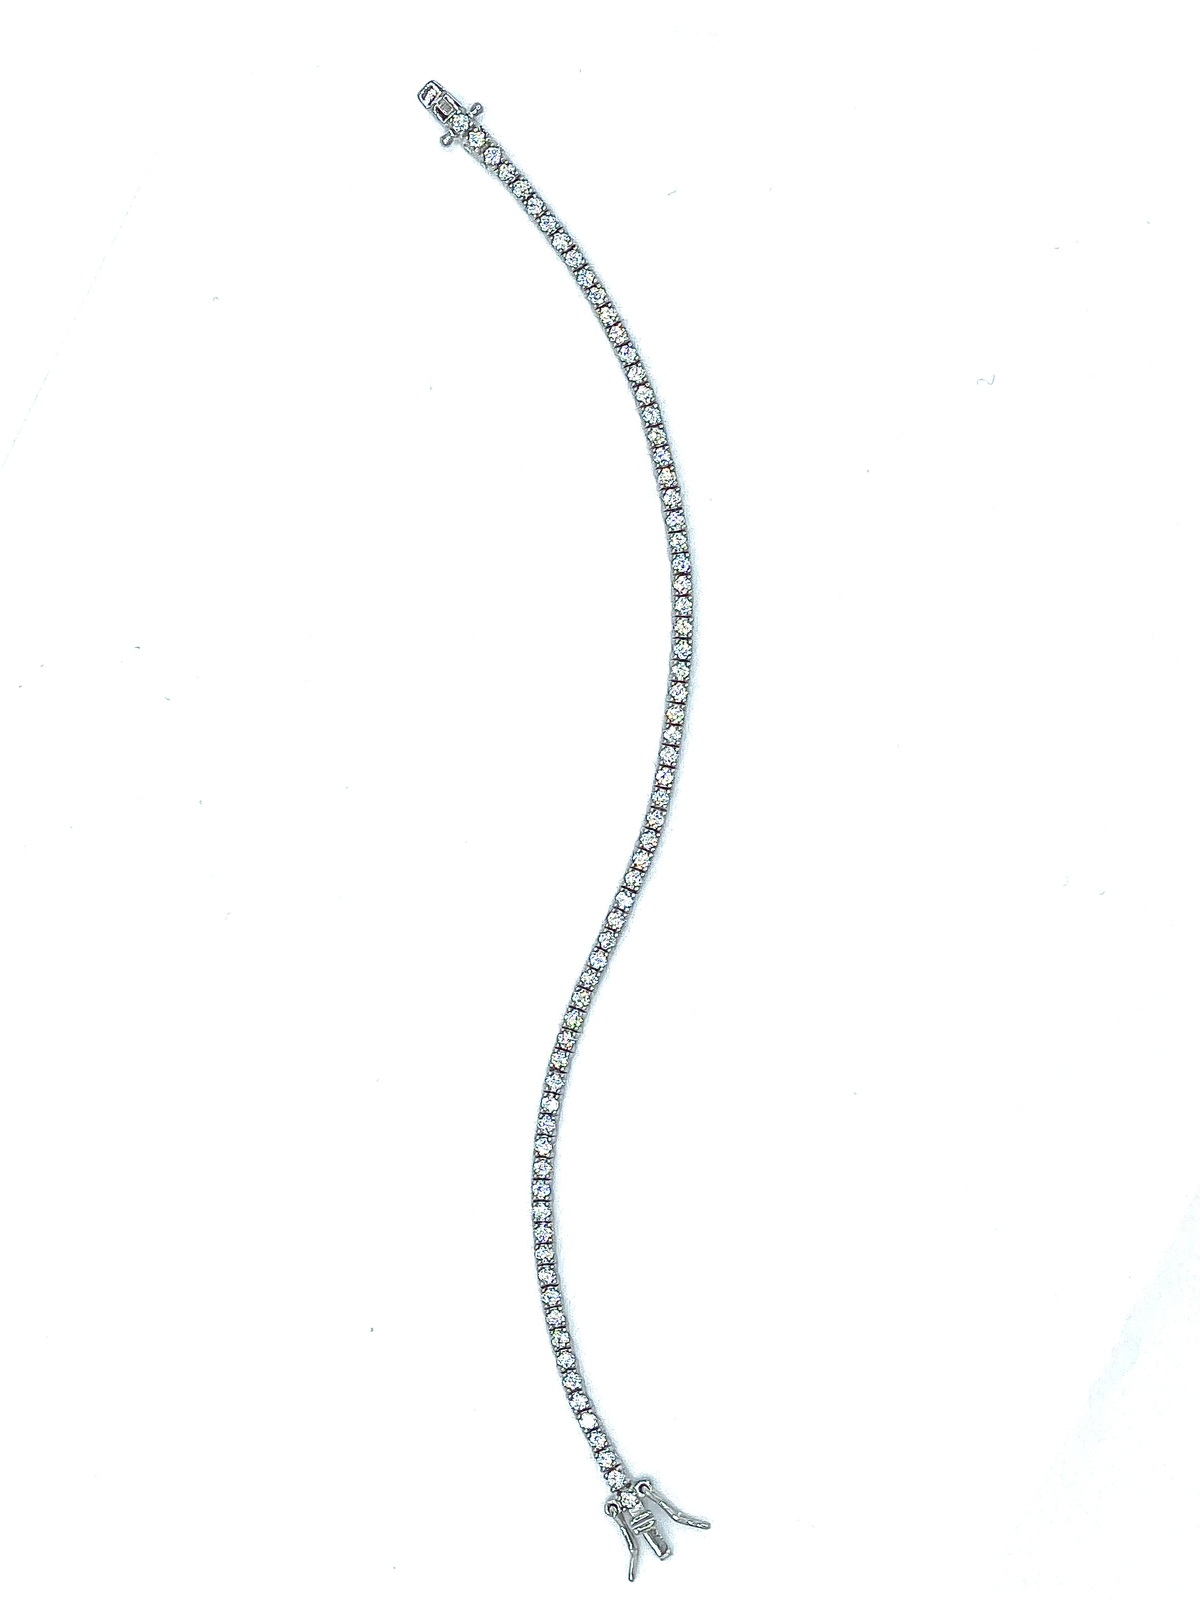 Tennis bracelet in silver tit 925m. (19cm)